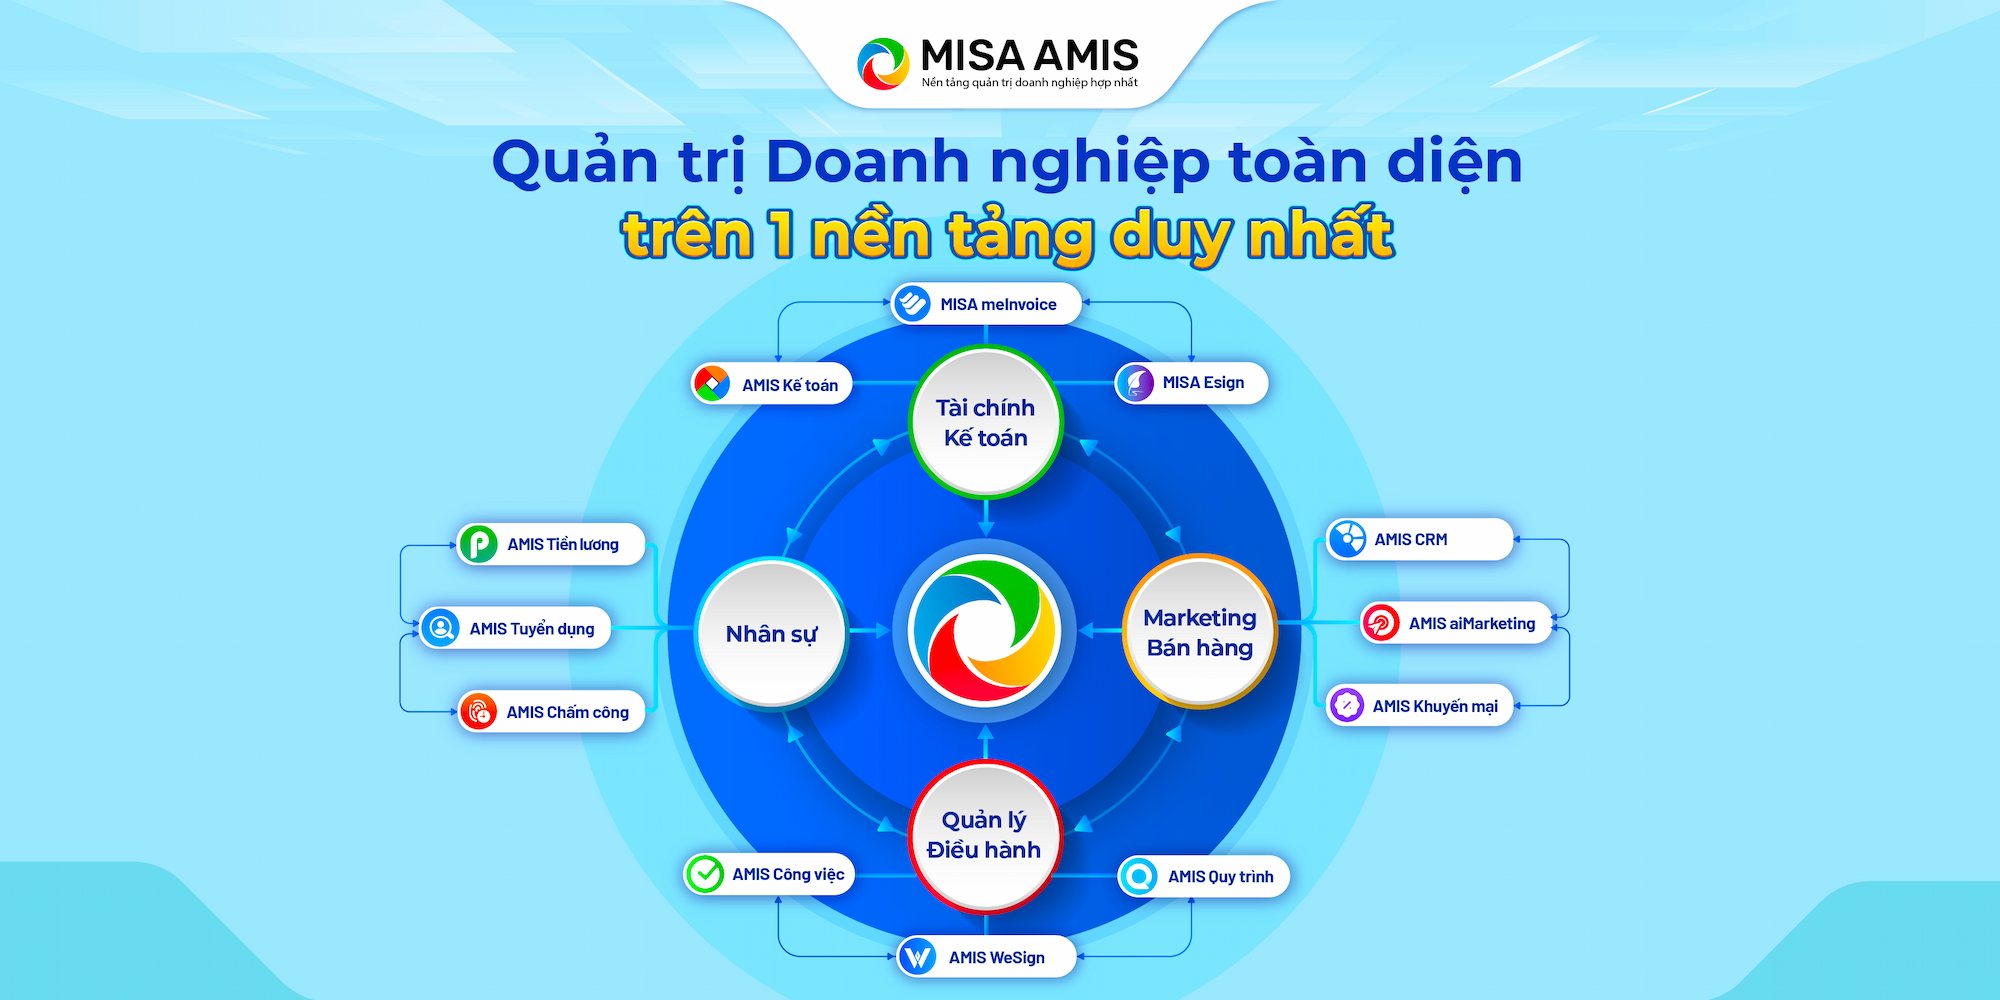 phần mềm ERP MISA AMIS được phát triển bởi MISA